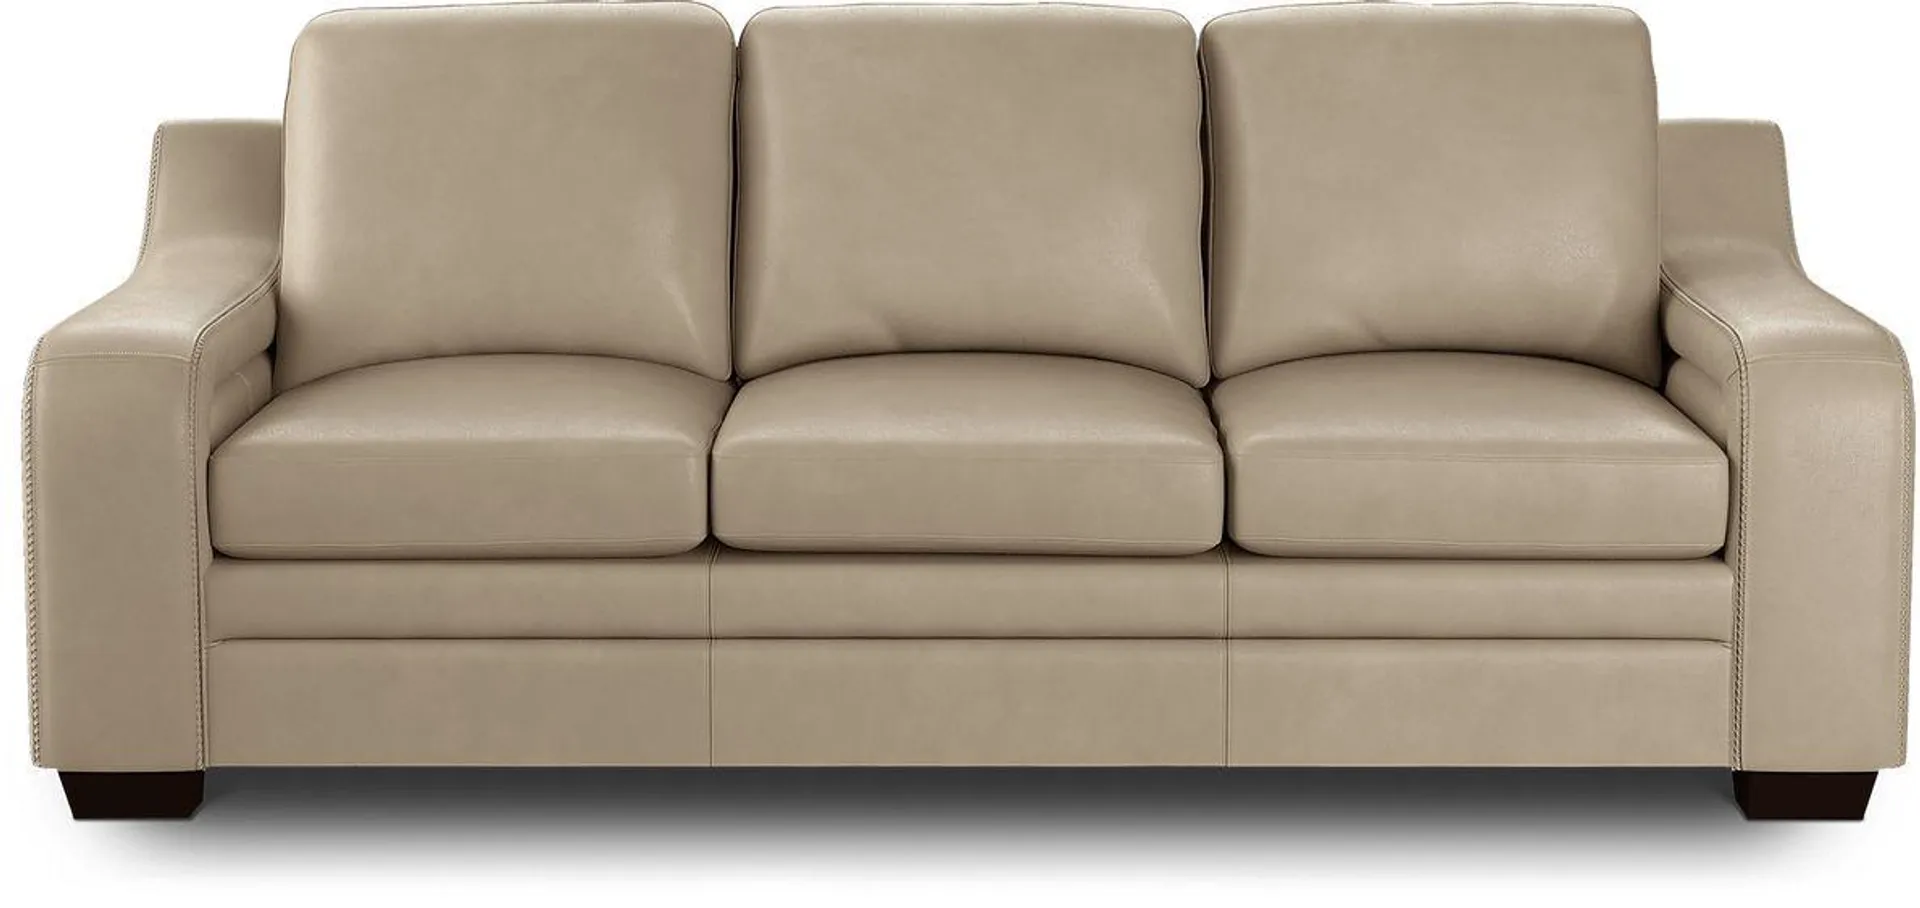 Gisella Leather Sofa